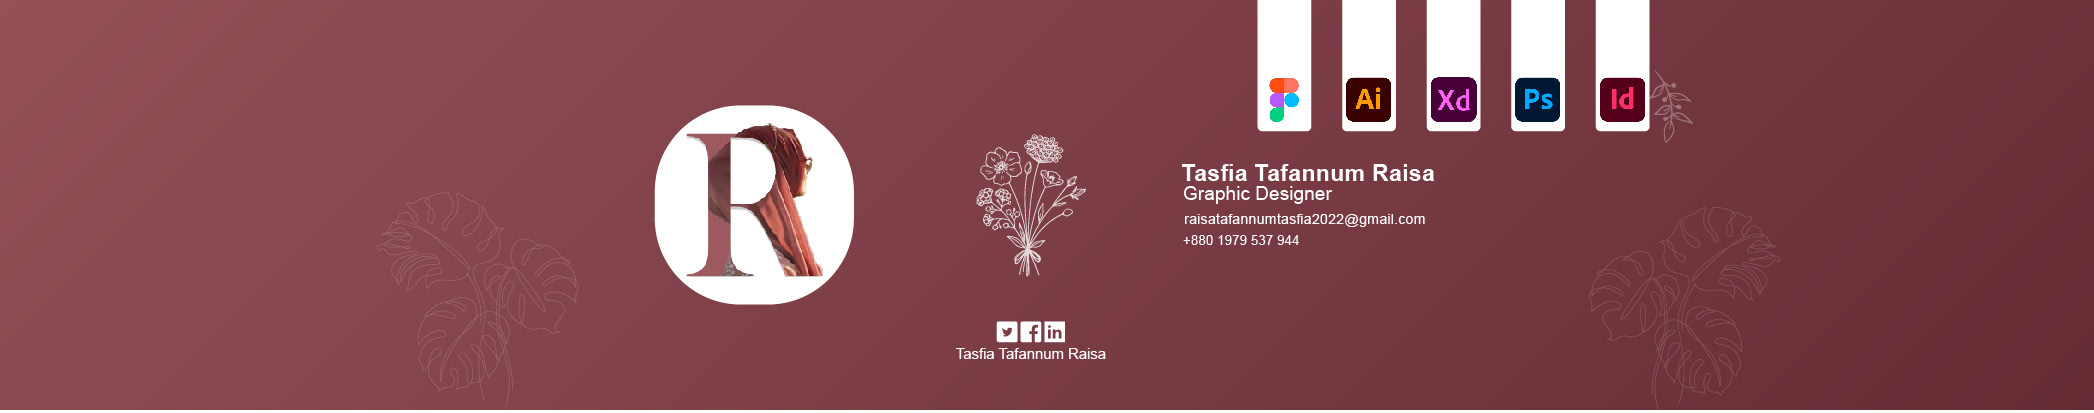 Tasfia Tafannum Raisa's profile banner